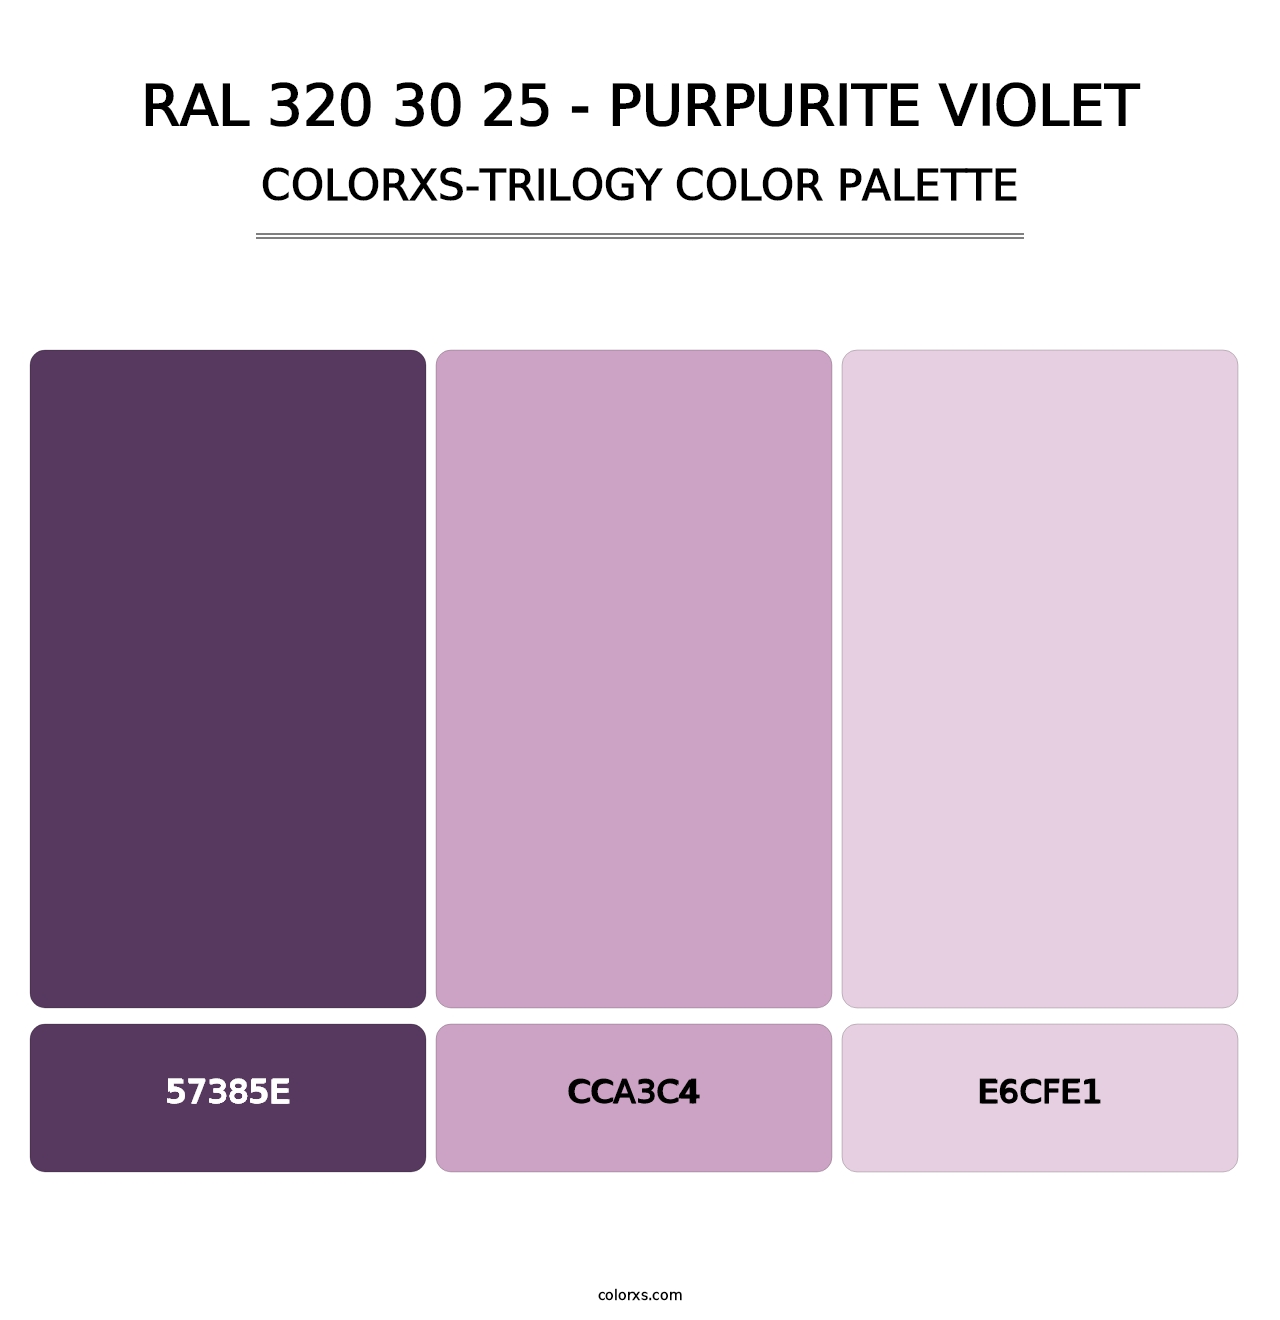 RAL 320 30 25 - Purpurite Violet - Colorxs Trilogy Palette